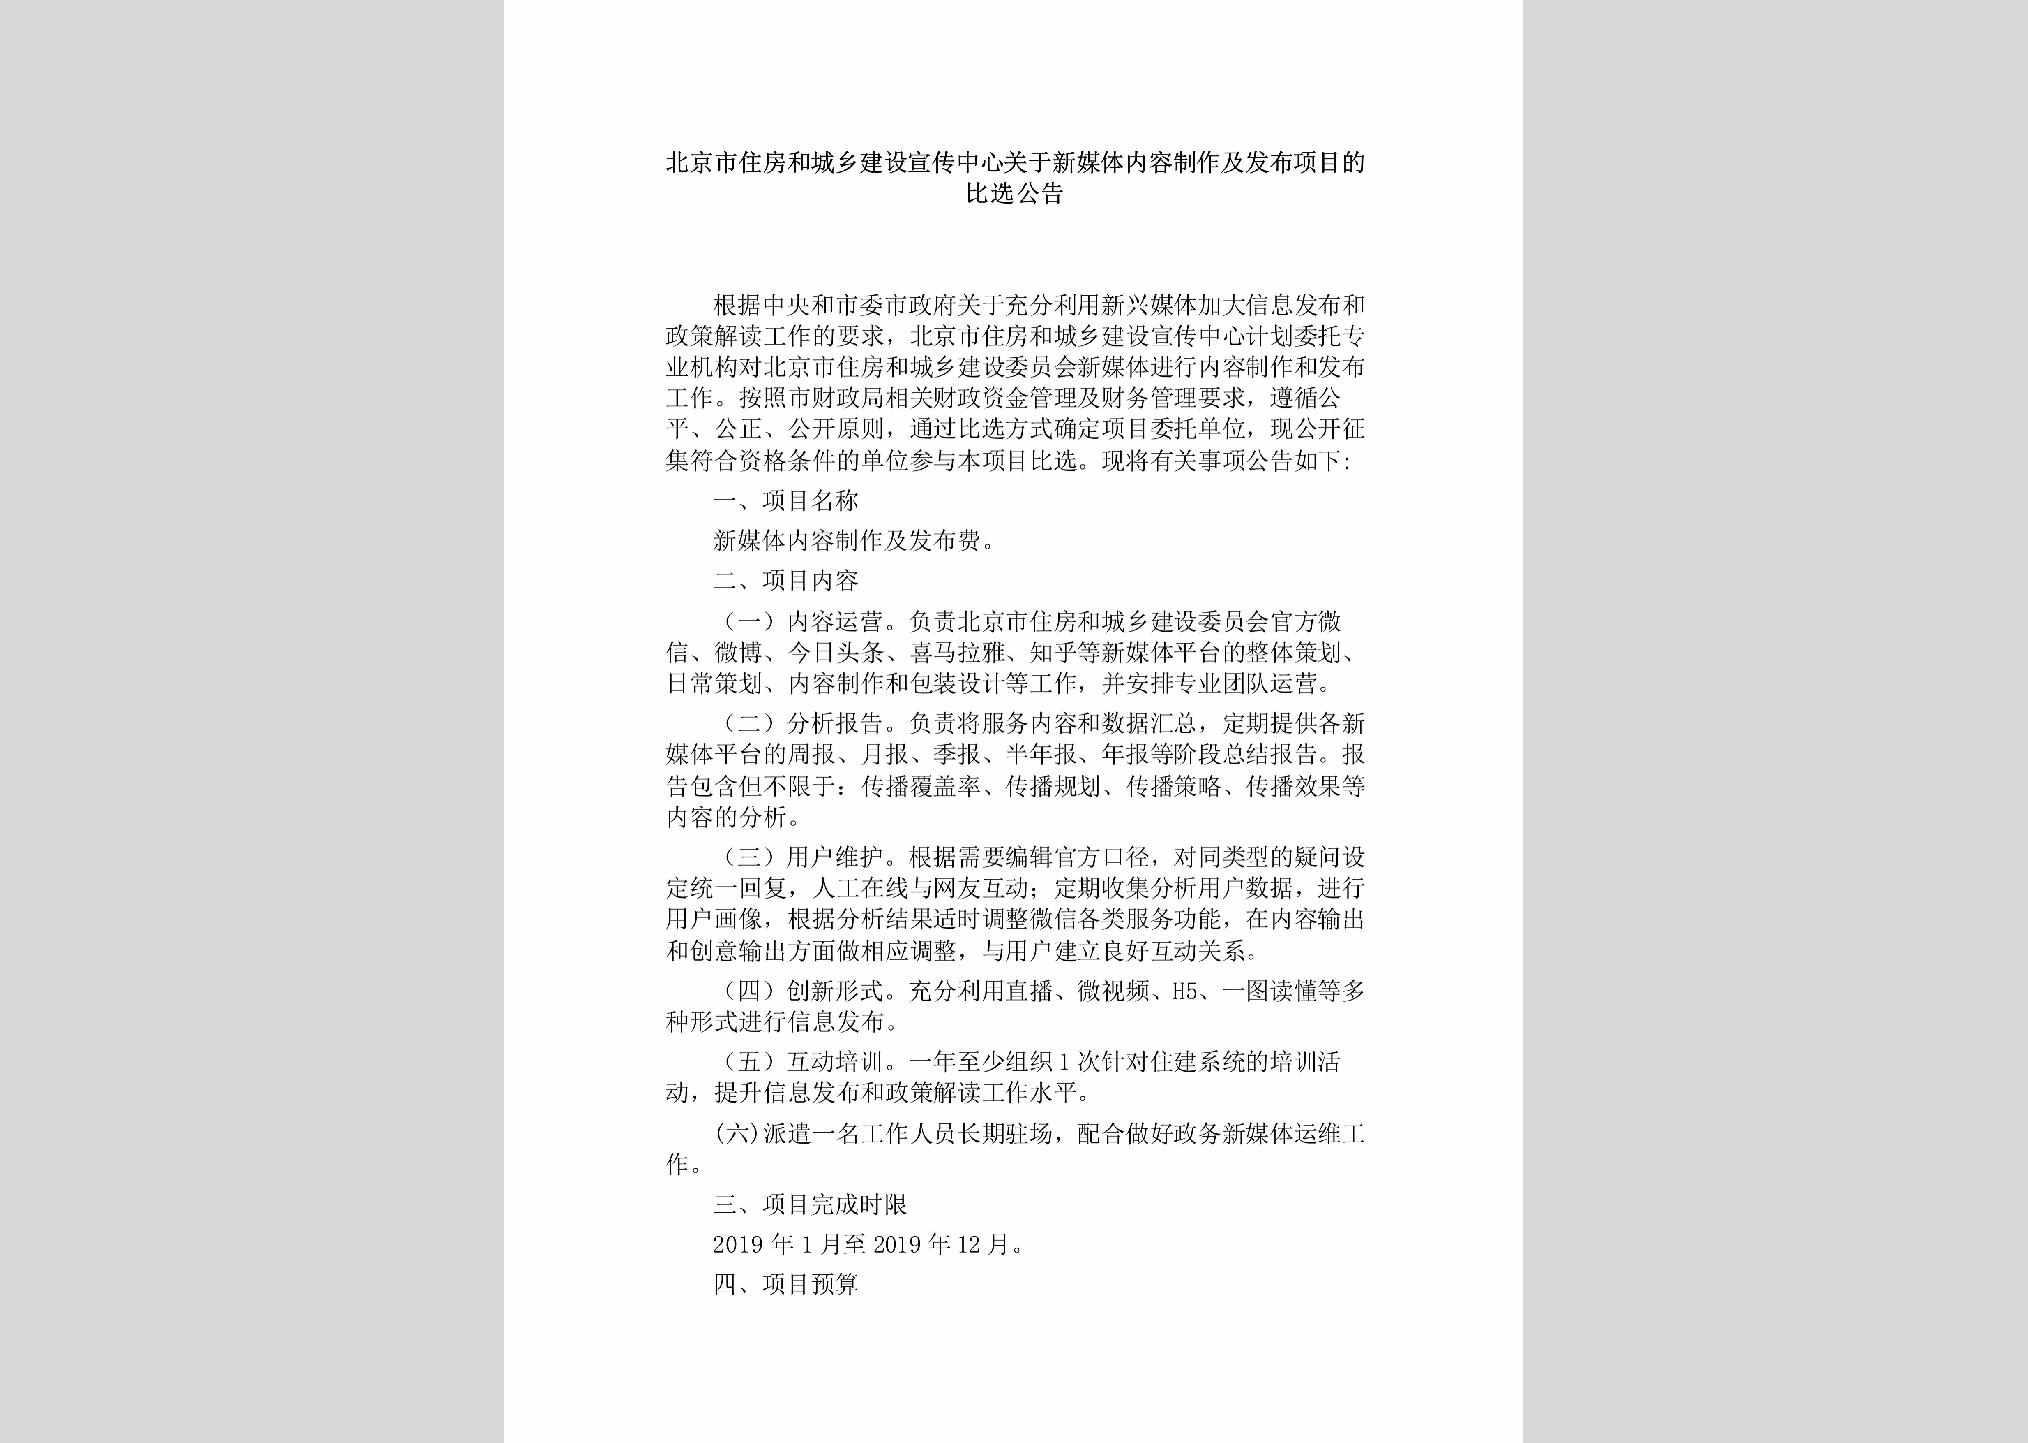 BJ-XCZXFBXM-2018：北京市住房和城乡建设宣传中心关于新媒体内容制作及发布项目的比选公告